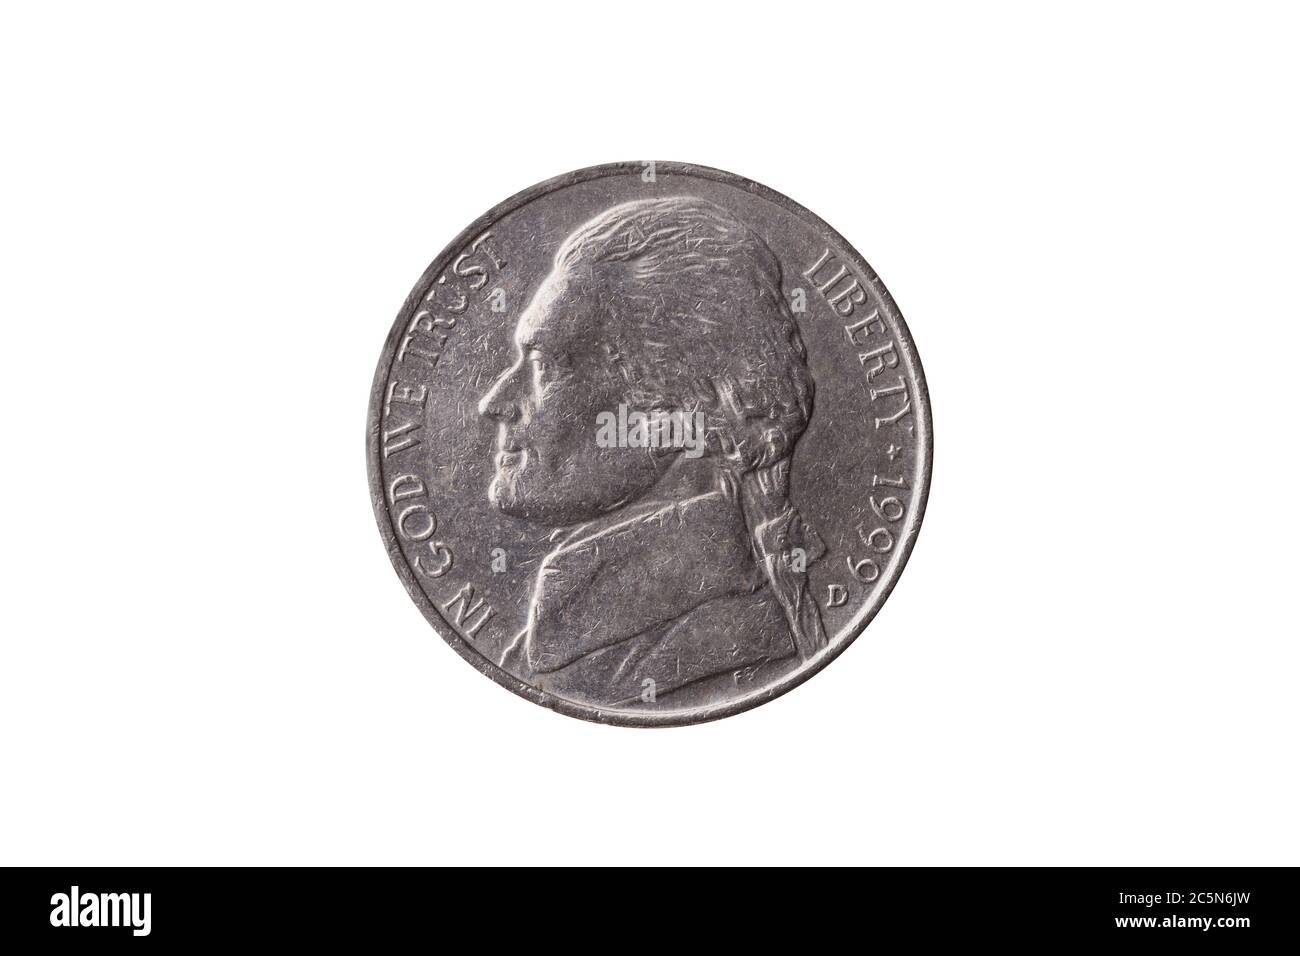 Moneta di nichel a metà moneta (25 centesimi) datata 1999 con un ritratto di Thomas Jefferson tagliato e isolato su uno sfondo bianco Foto Stock